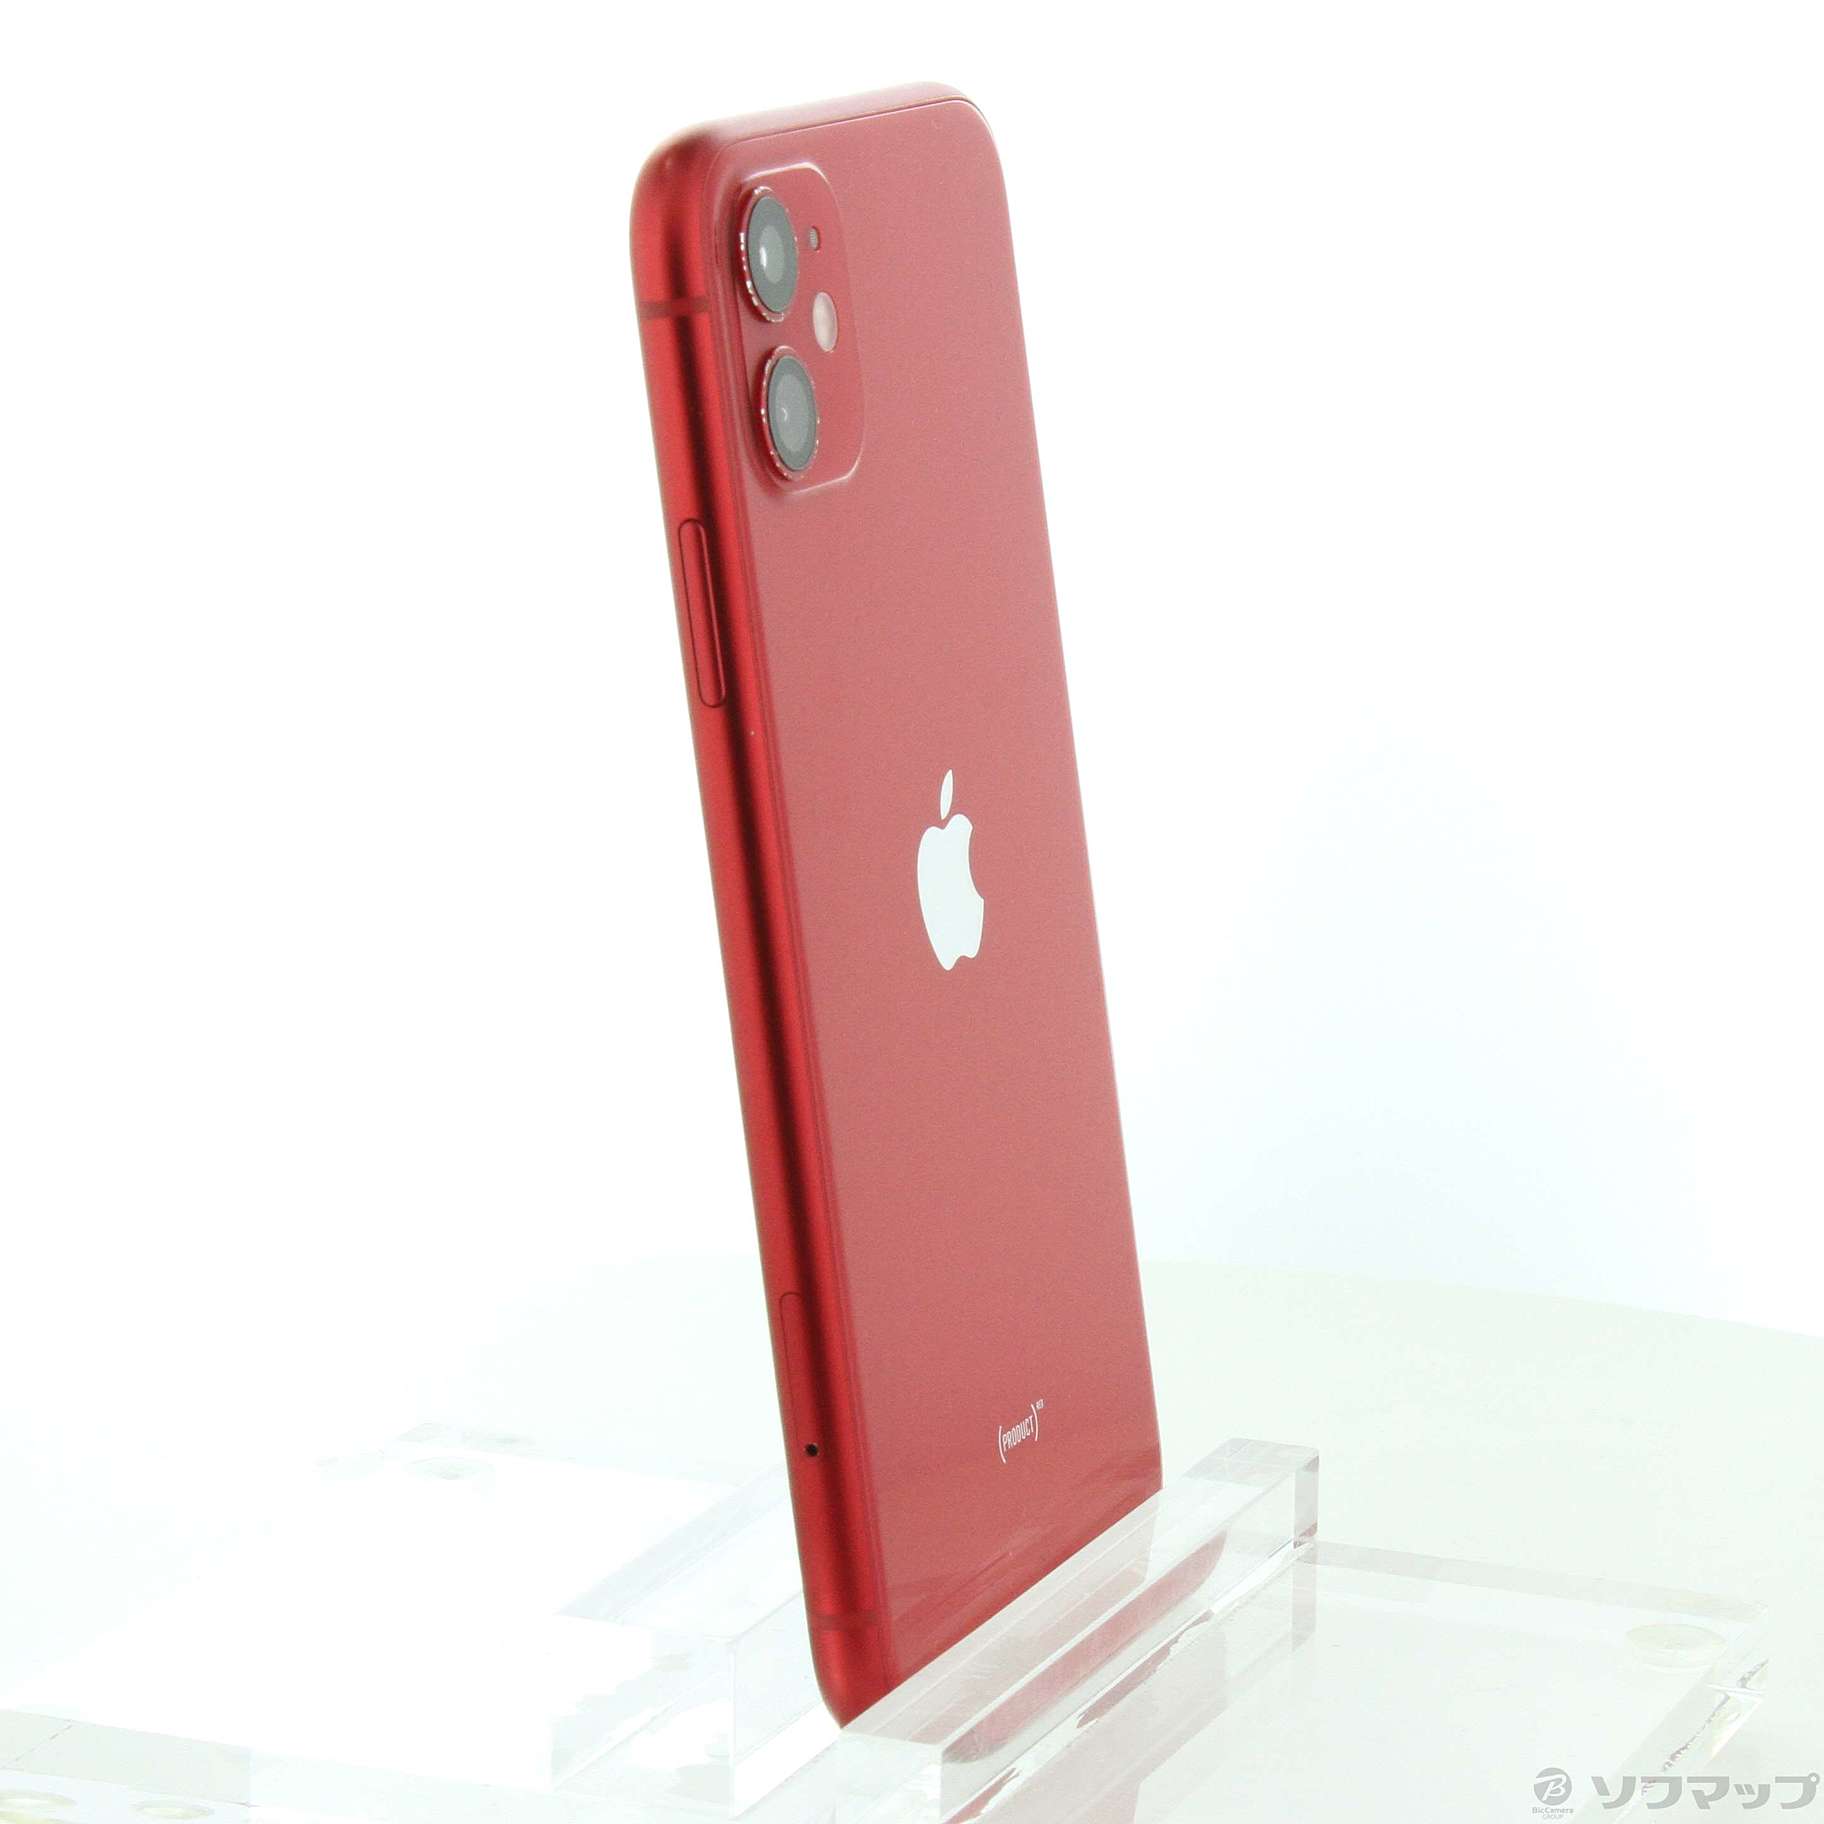 12,259円iPhone11  64GBモデル product red SIMフリー